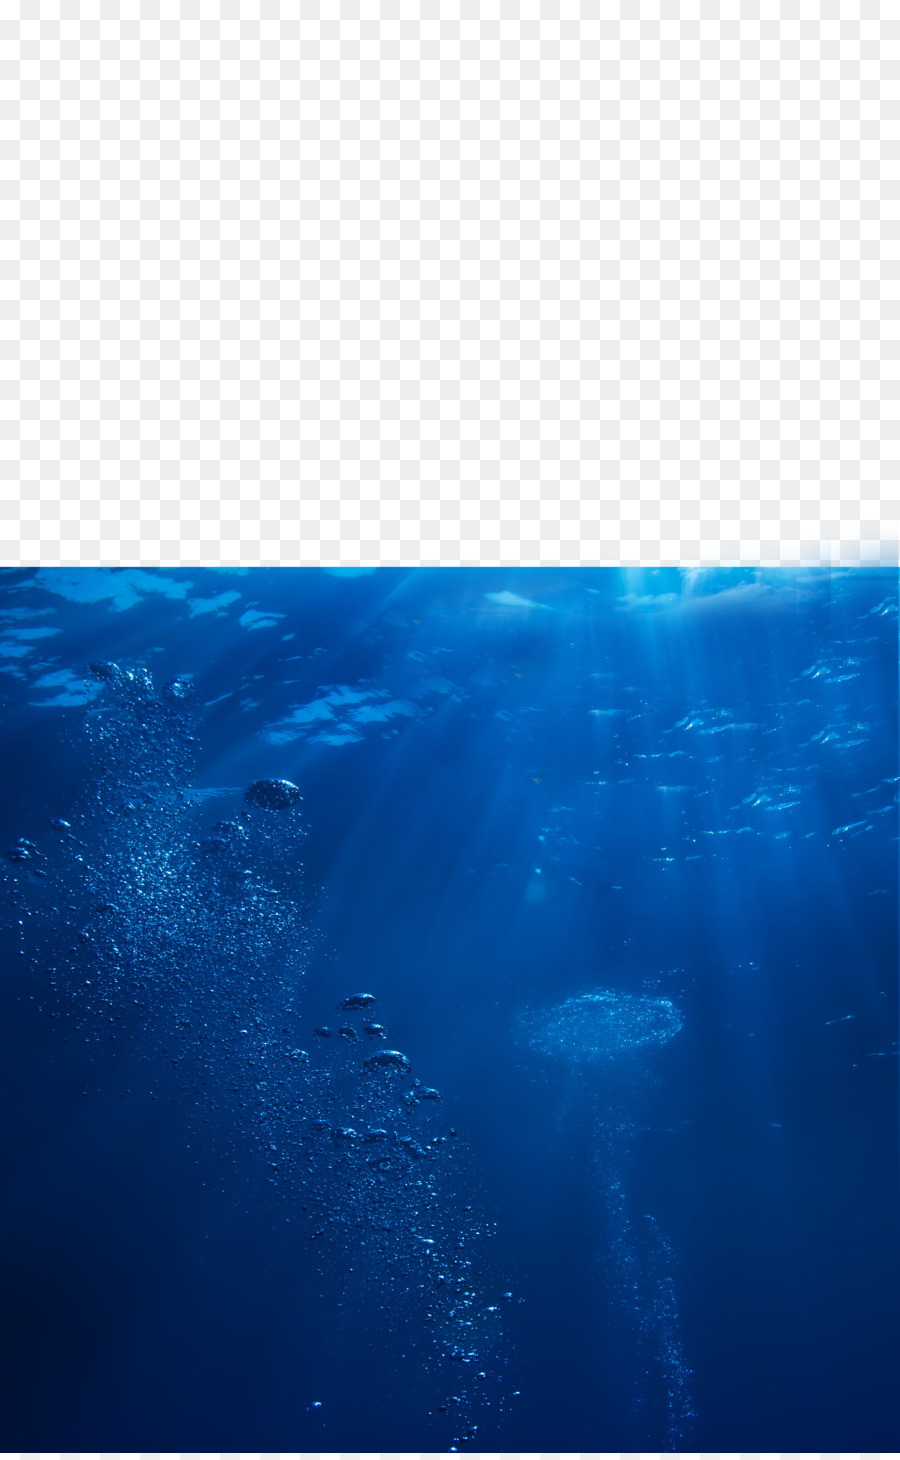 Seawater Ocean Deep sea - Seas png download - 4724*7628 - Free Transparent Water png Download.